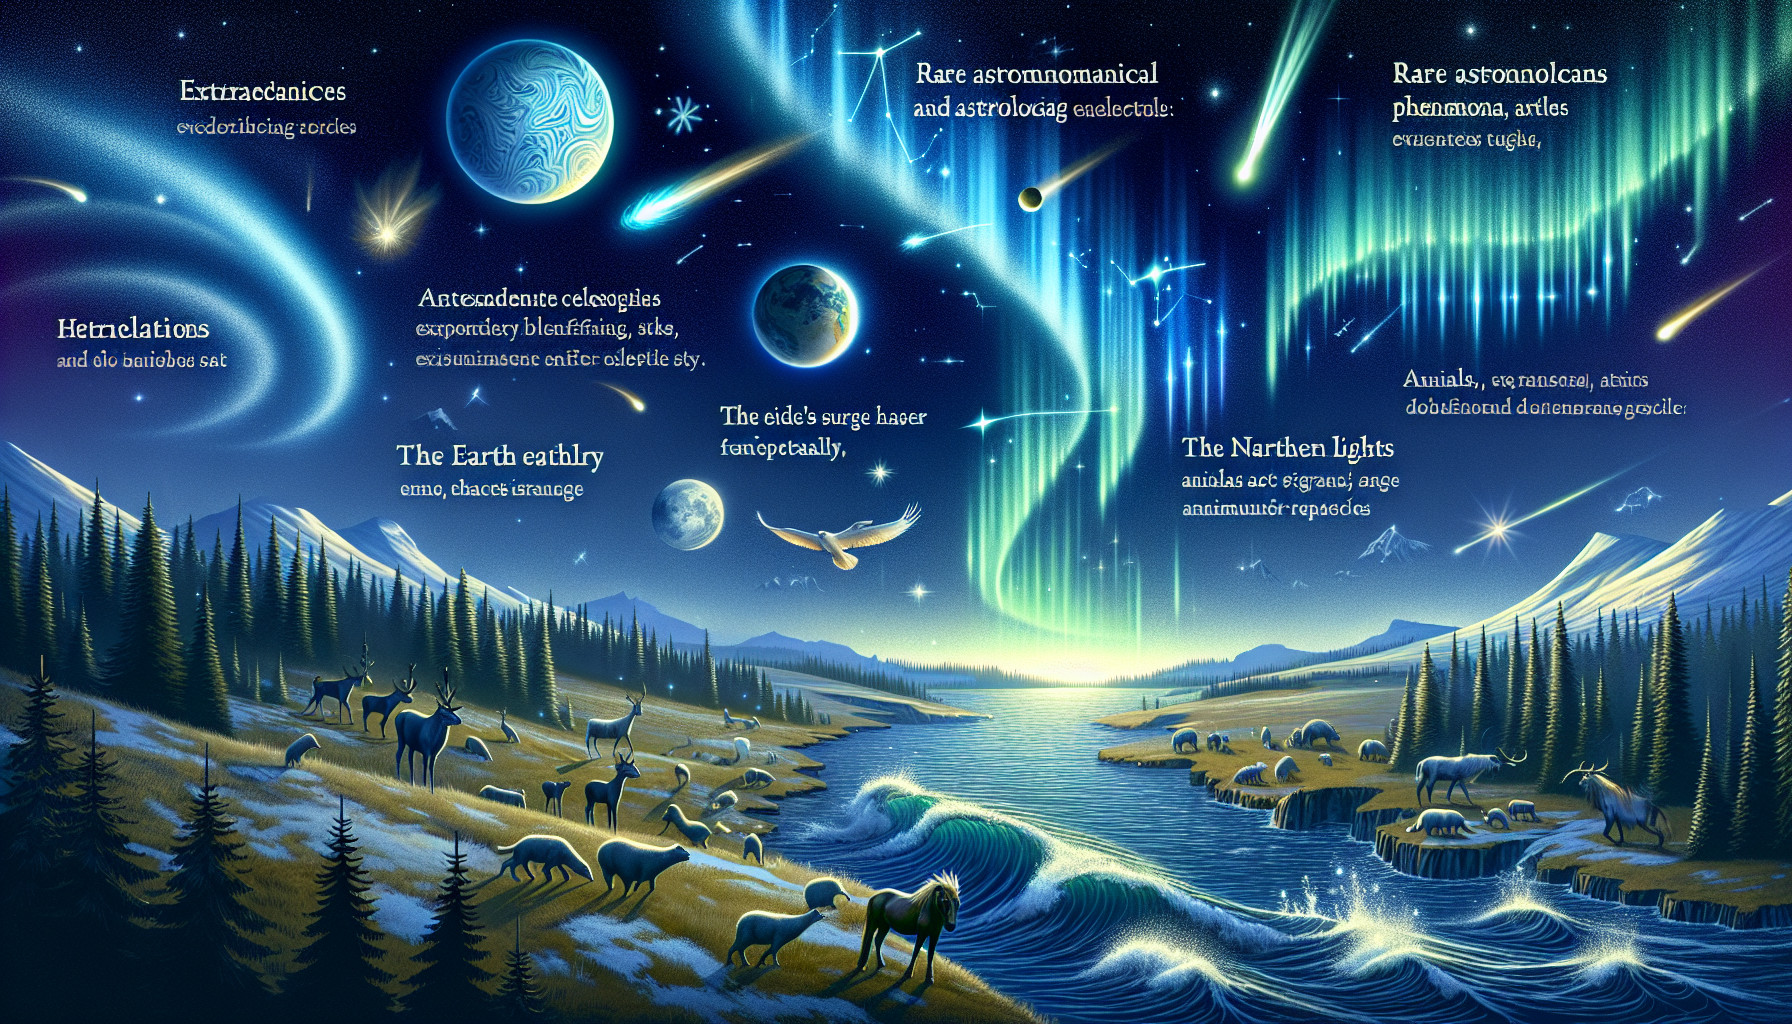 Astrología Y Fenómenos Astrológicos Raros: Efectos En La Tierra